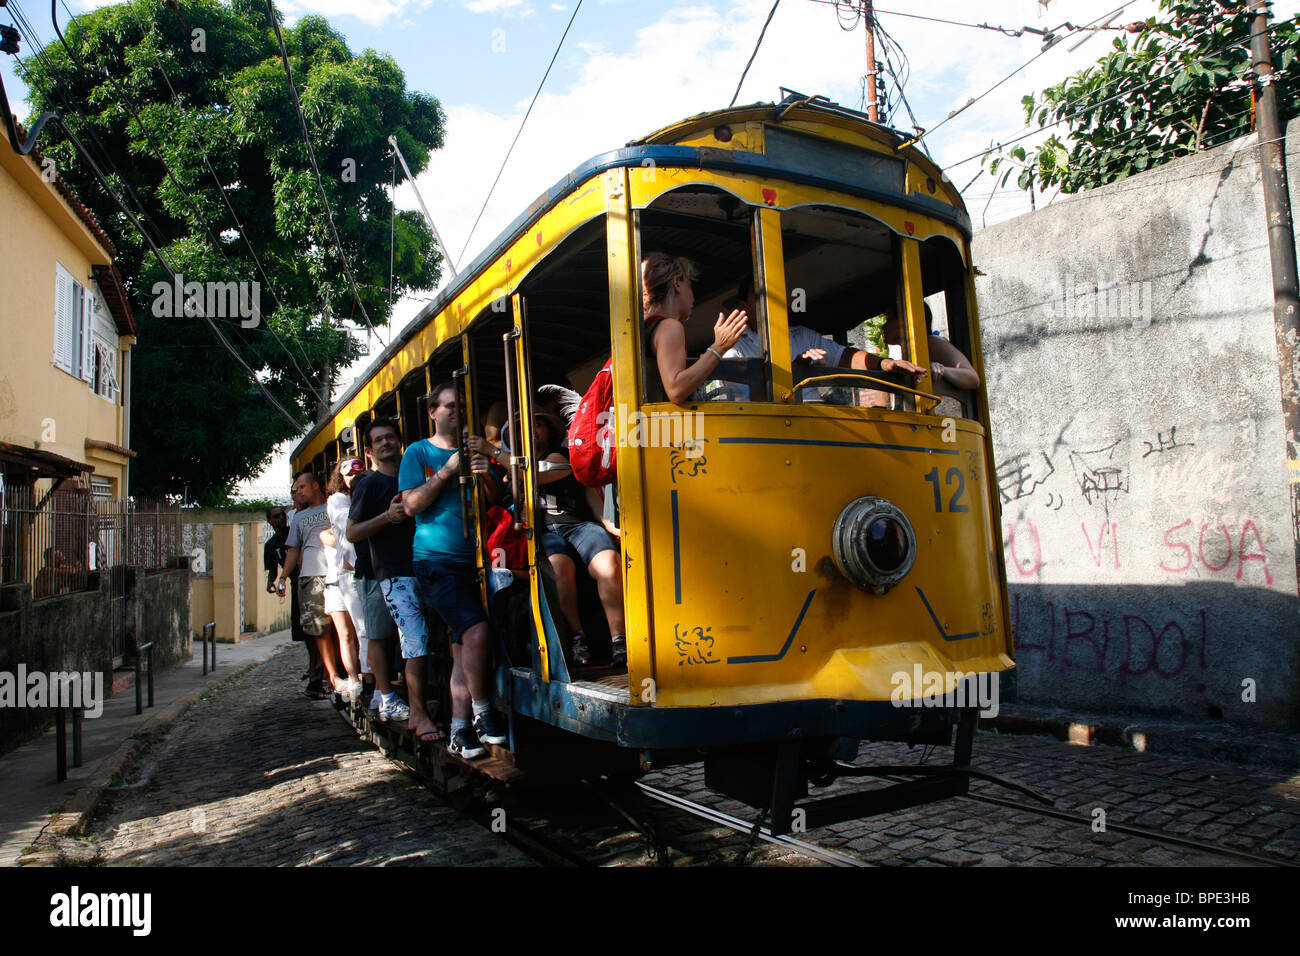 The Bonde (Trolley) at Santa Teresa, Rio de Janeiro, Brazil. Stock Photo